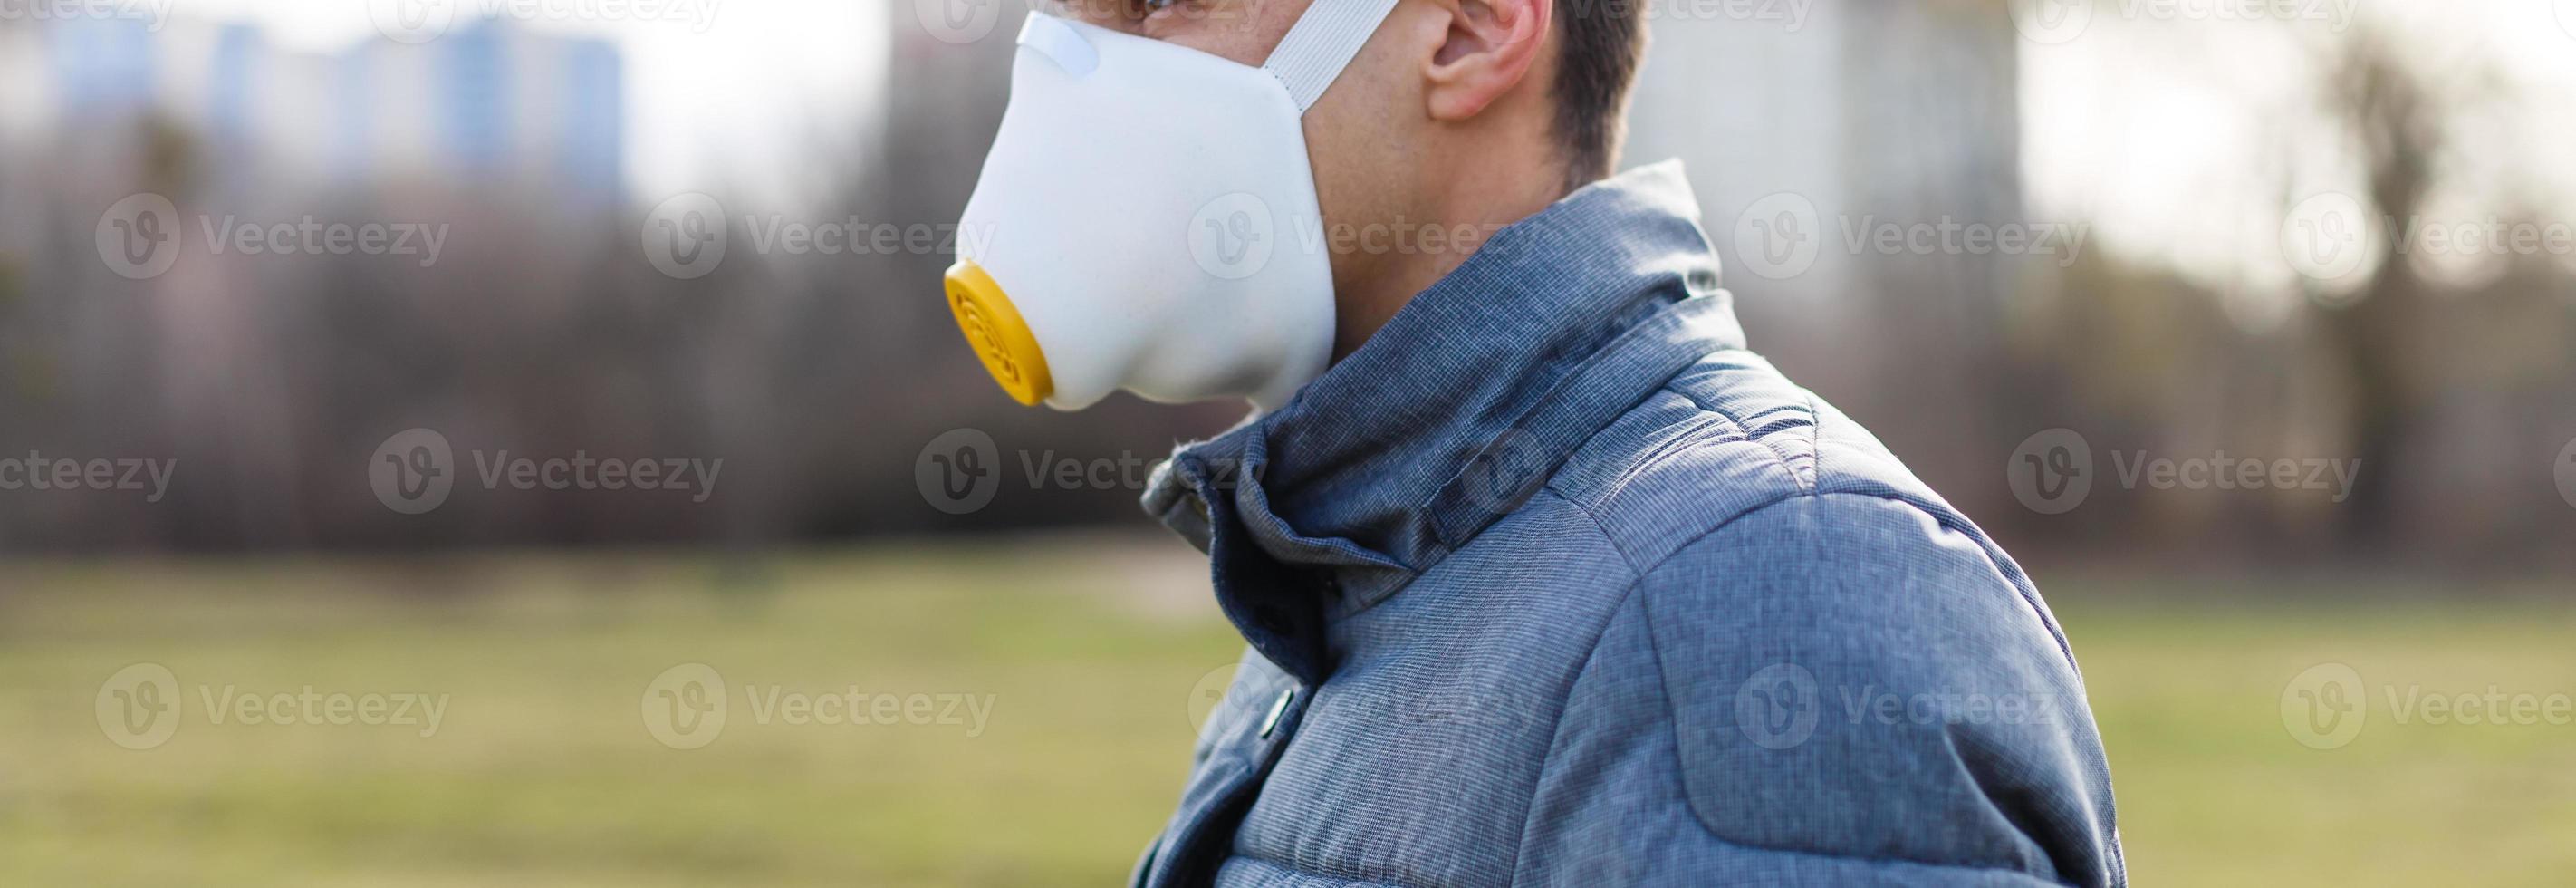 asiatisk man bär de ansikte mask på grund av till luft förorening - ung vuxen på parkera med förorening mask - person skyddande från luft förorening eller coronavirus eller covid-19 förbi bär mask. foto